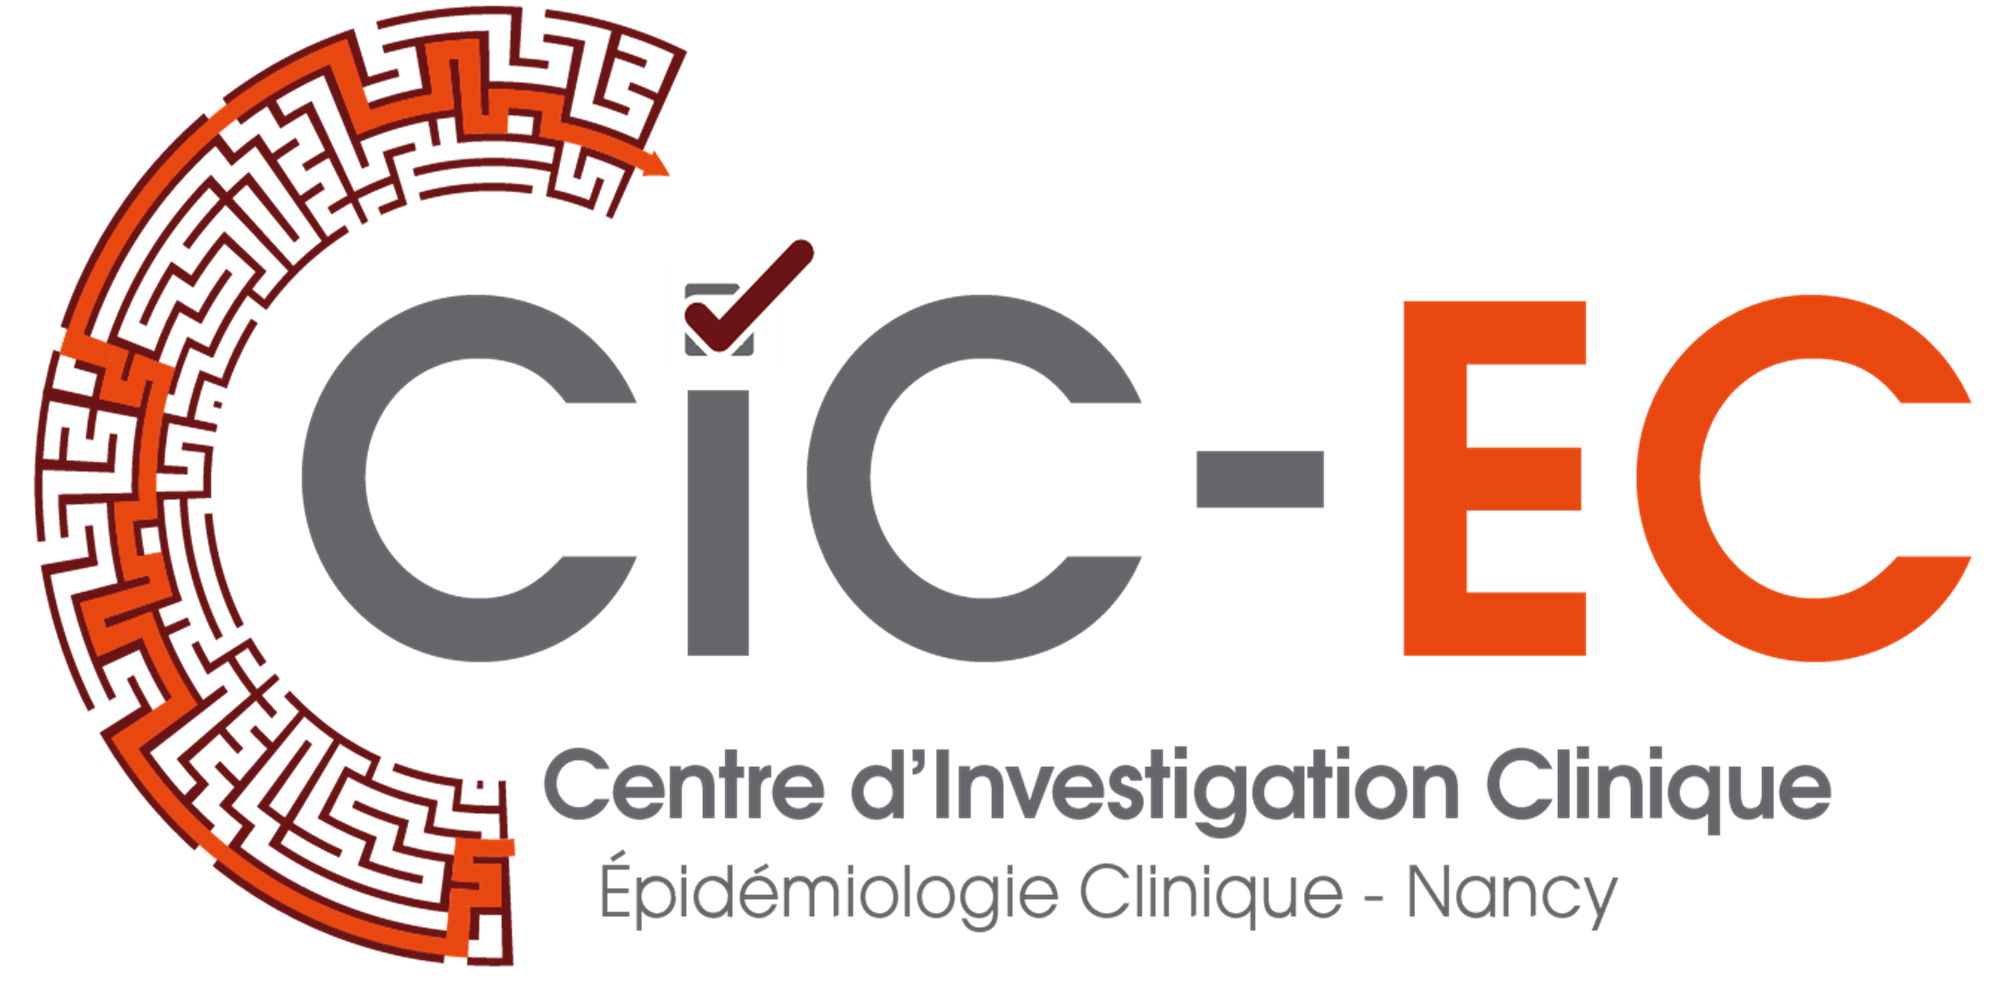 Logo CIC-EC 2018-HD